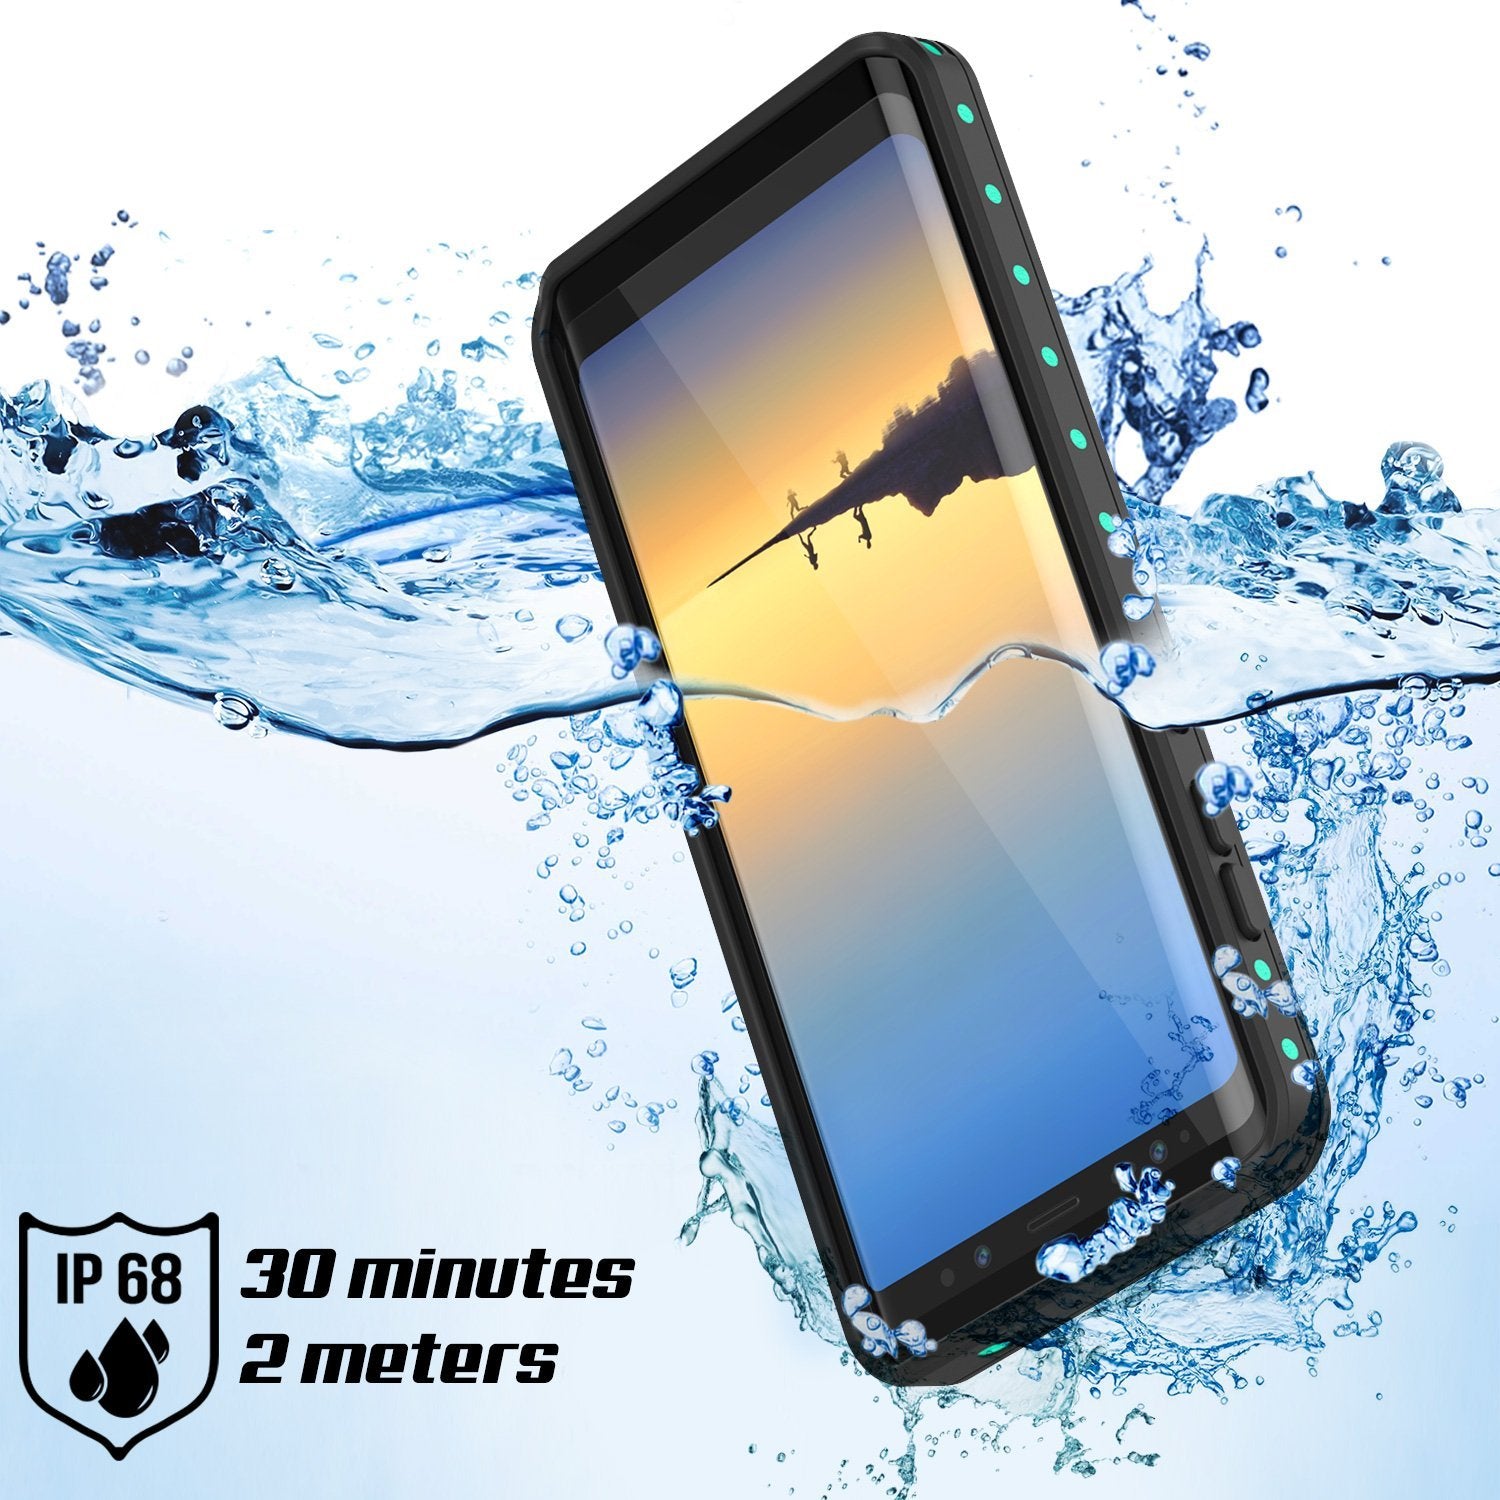 Galaxy Note 8 Punkcase Waterproof IP68 Shock/Snow Proof Case [Teal]